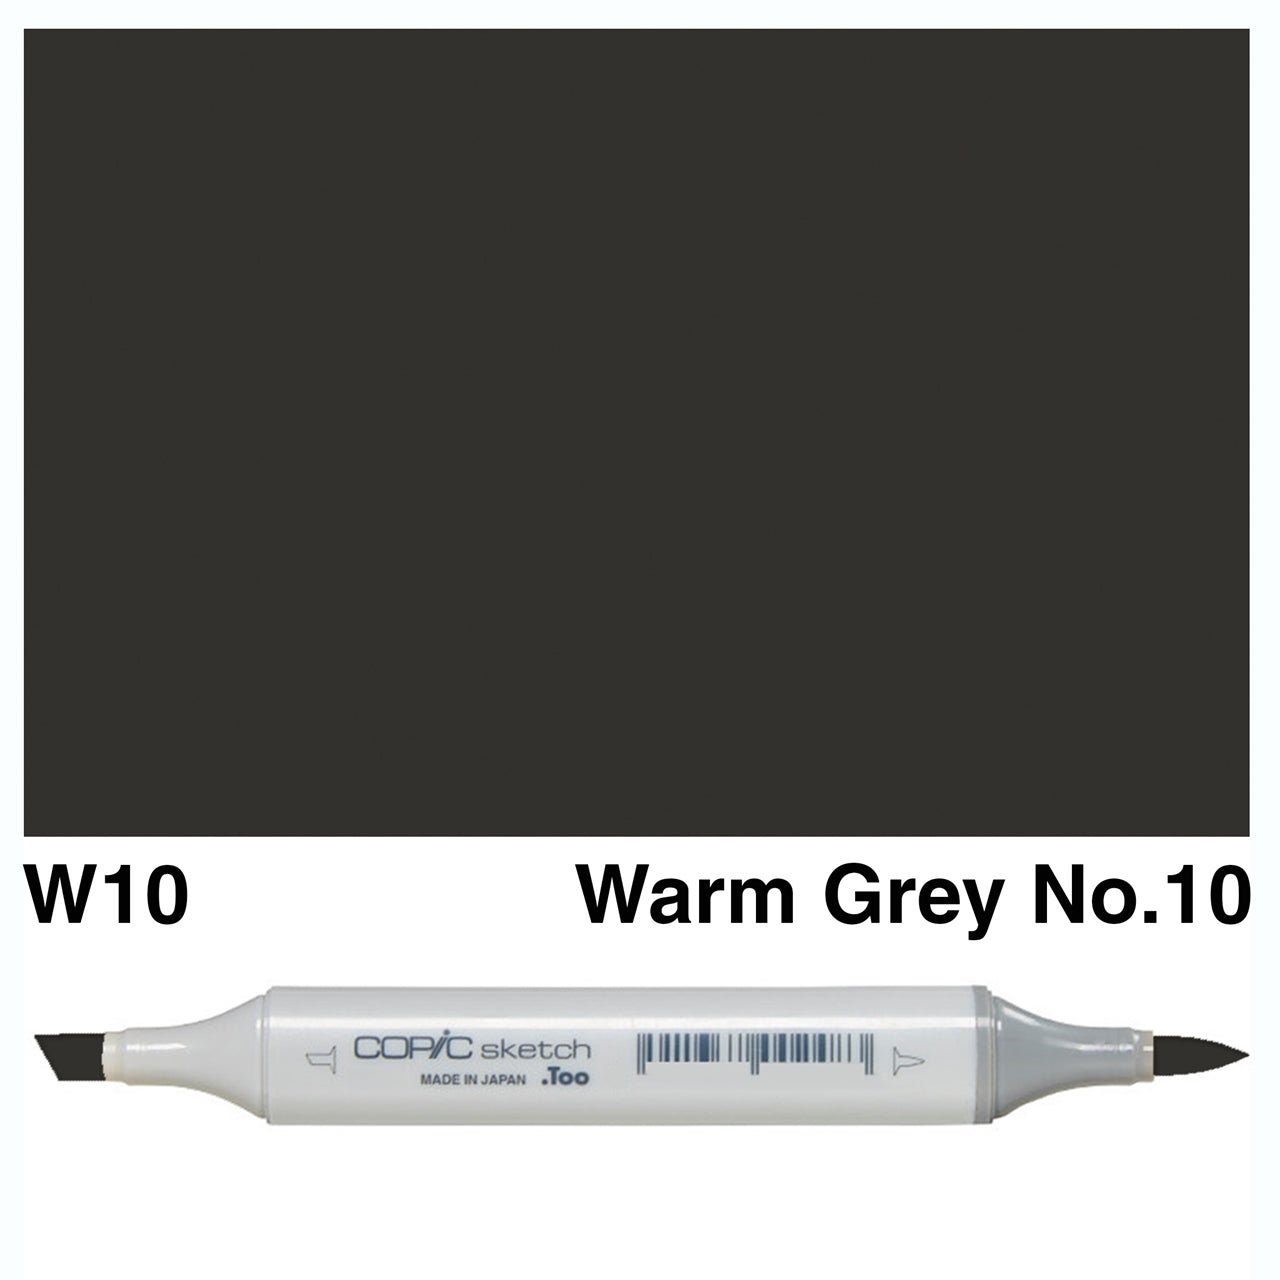 Copic Sketch W10 Warm Gray No.10 - theartshop.com.au